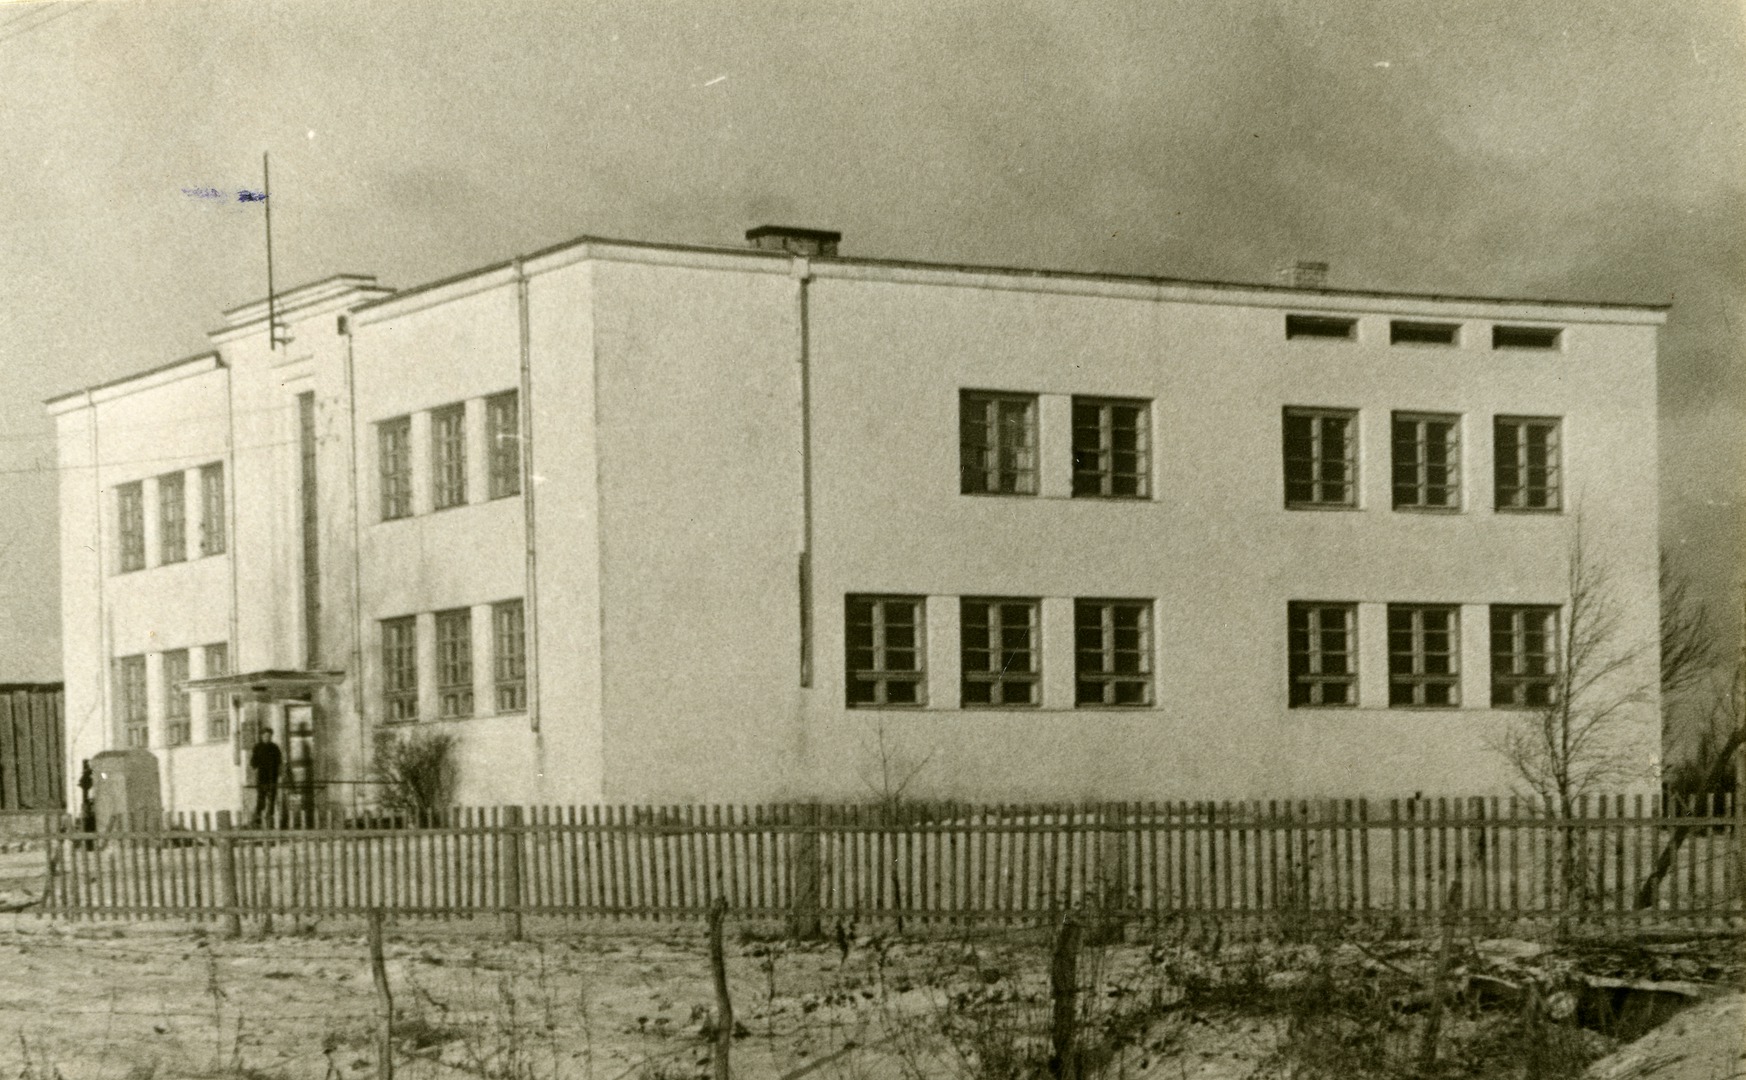 Tiirmetsa 8-kl School buildings in Saaremaa